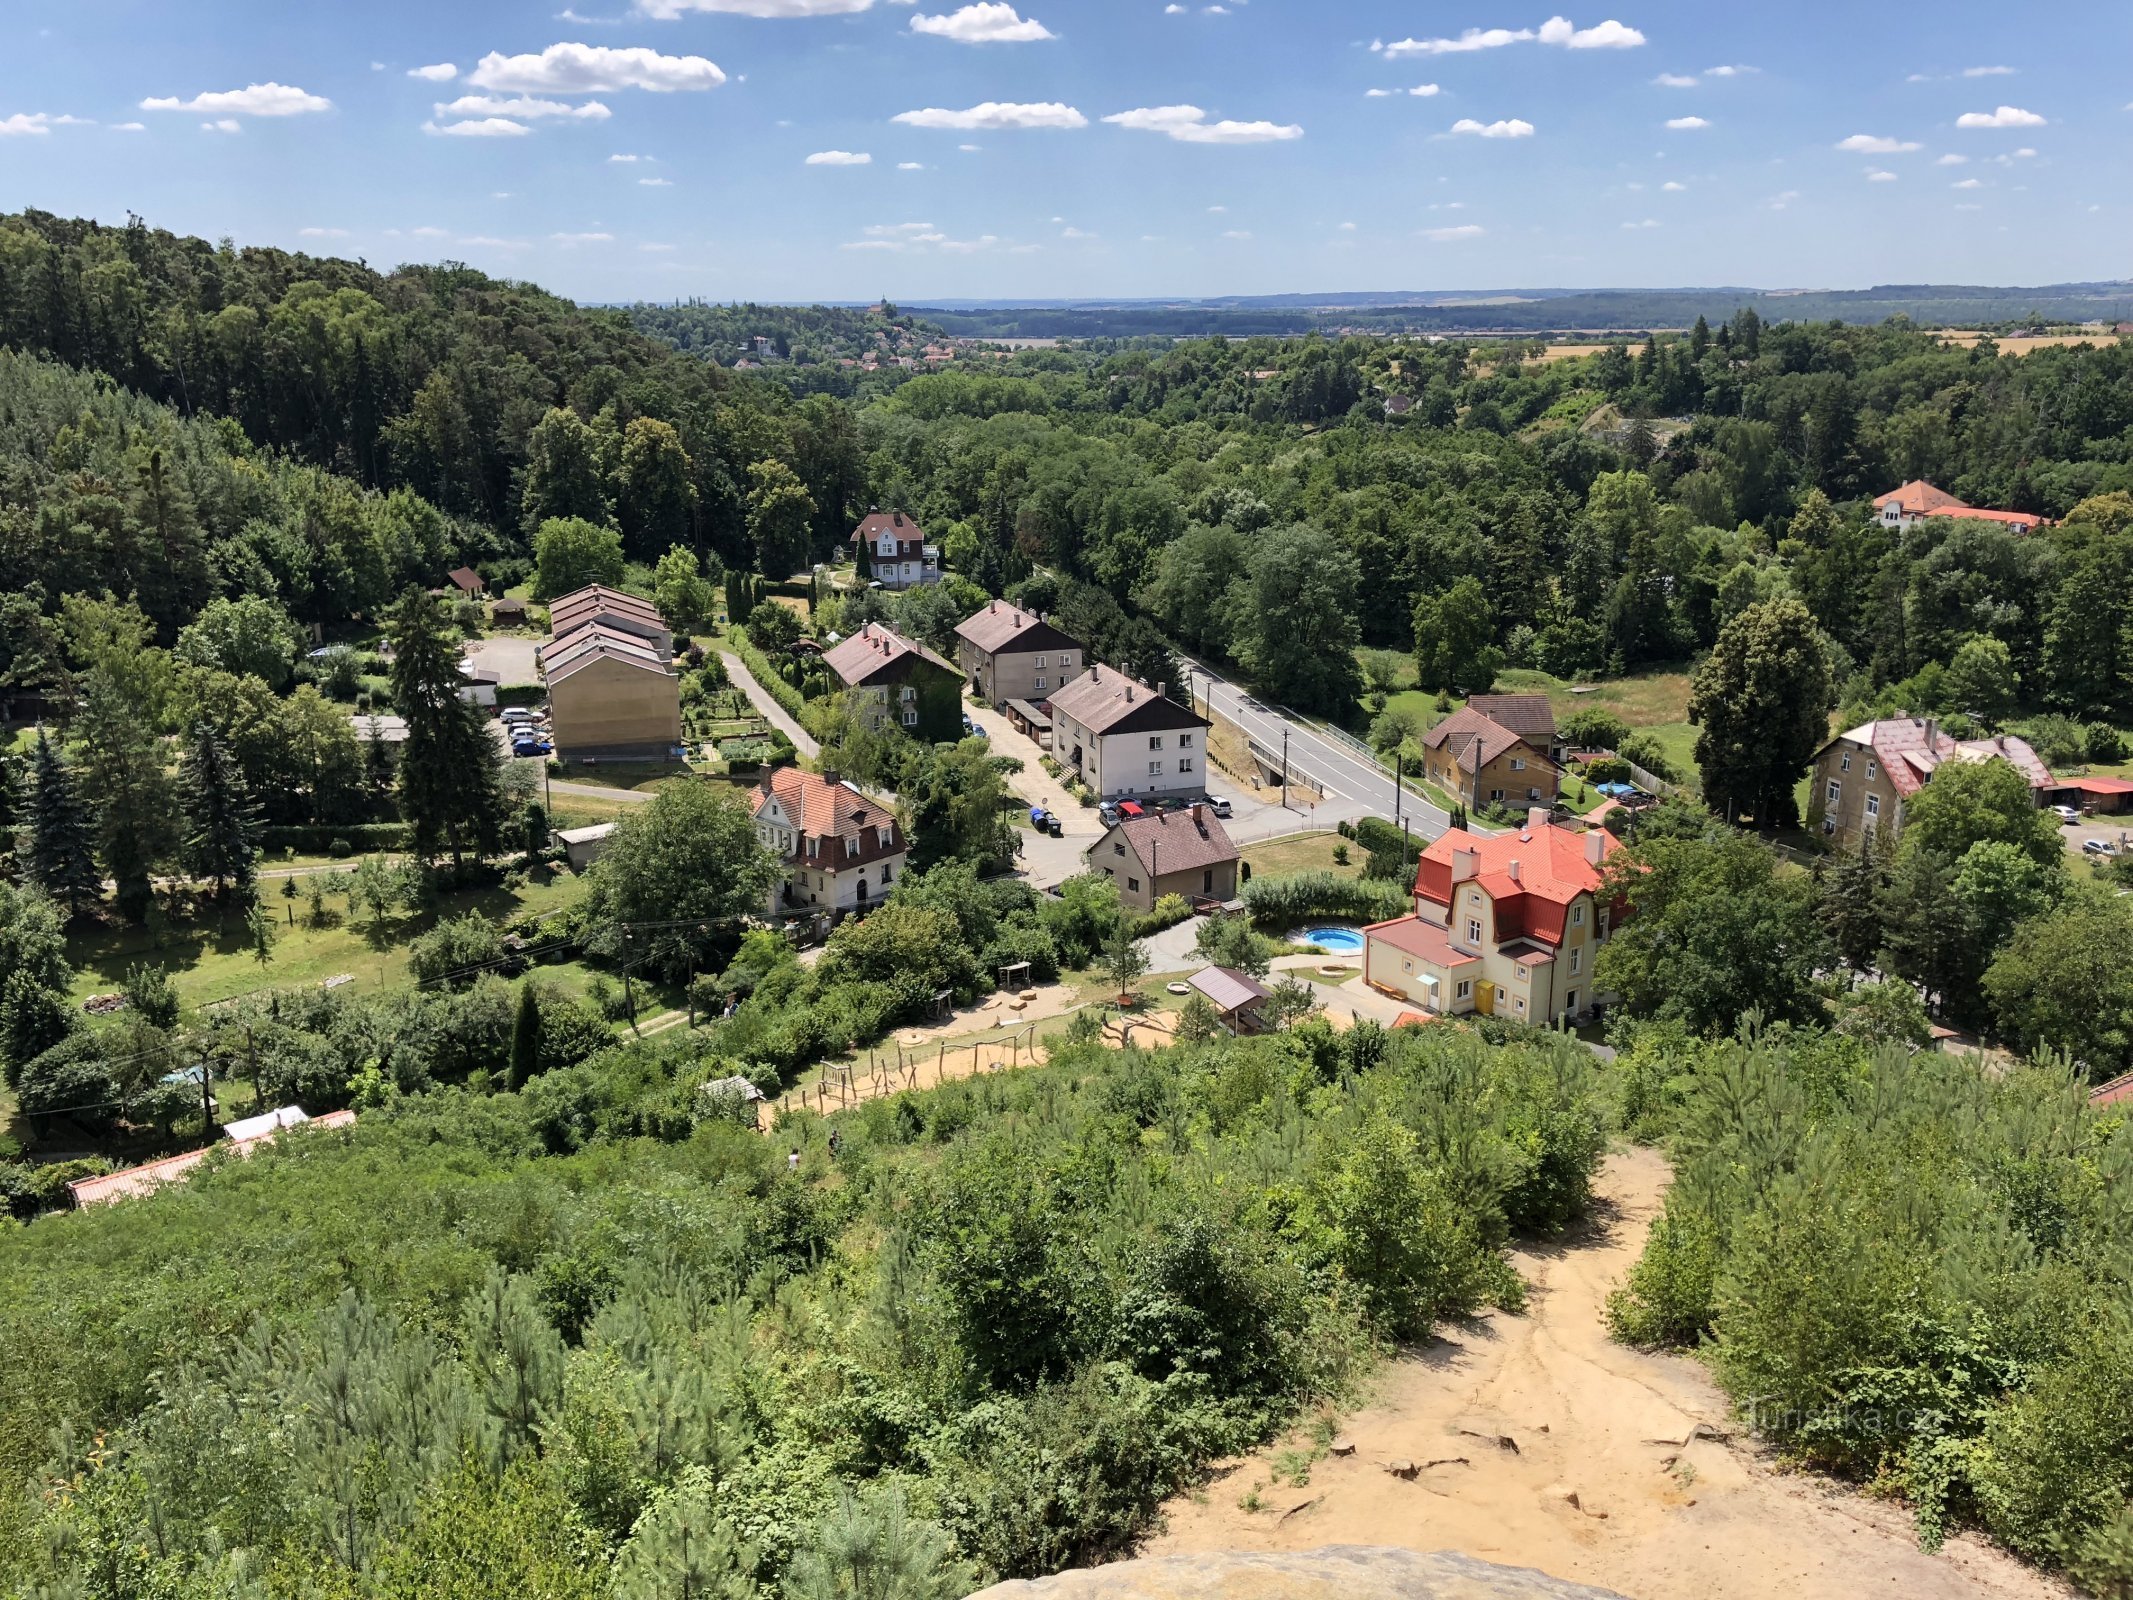 Kilátás a kilátóból a Liběchovka-völgyre és Želízy falura